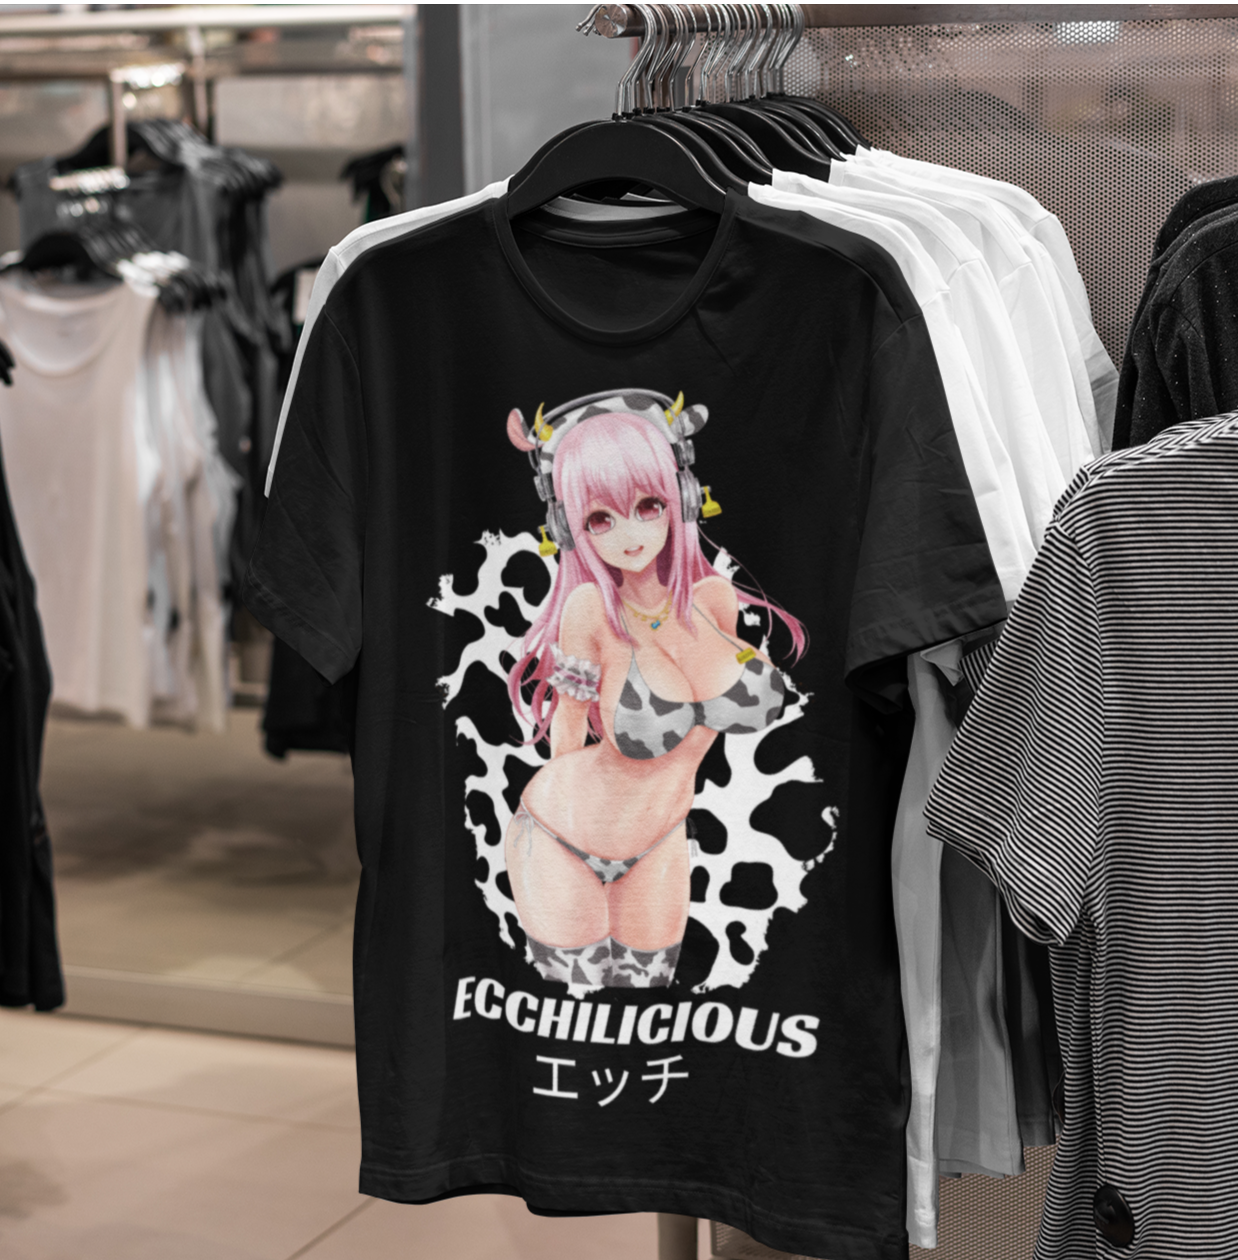 Sonico Unisex T-Shirt - Ecchilicious